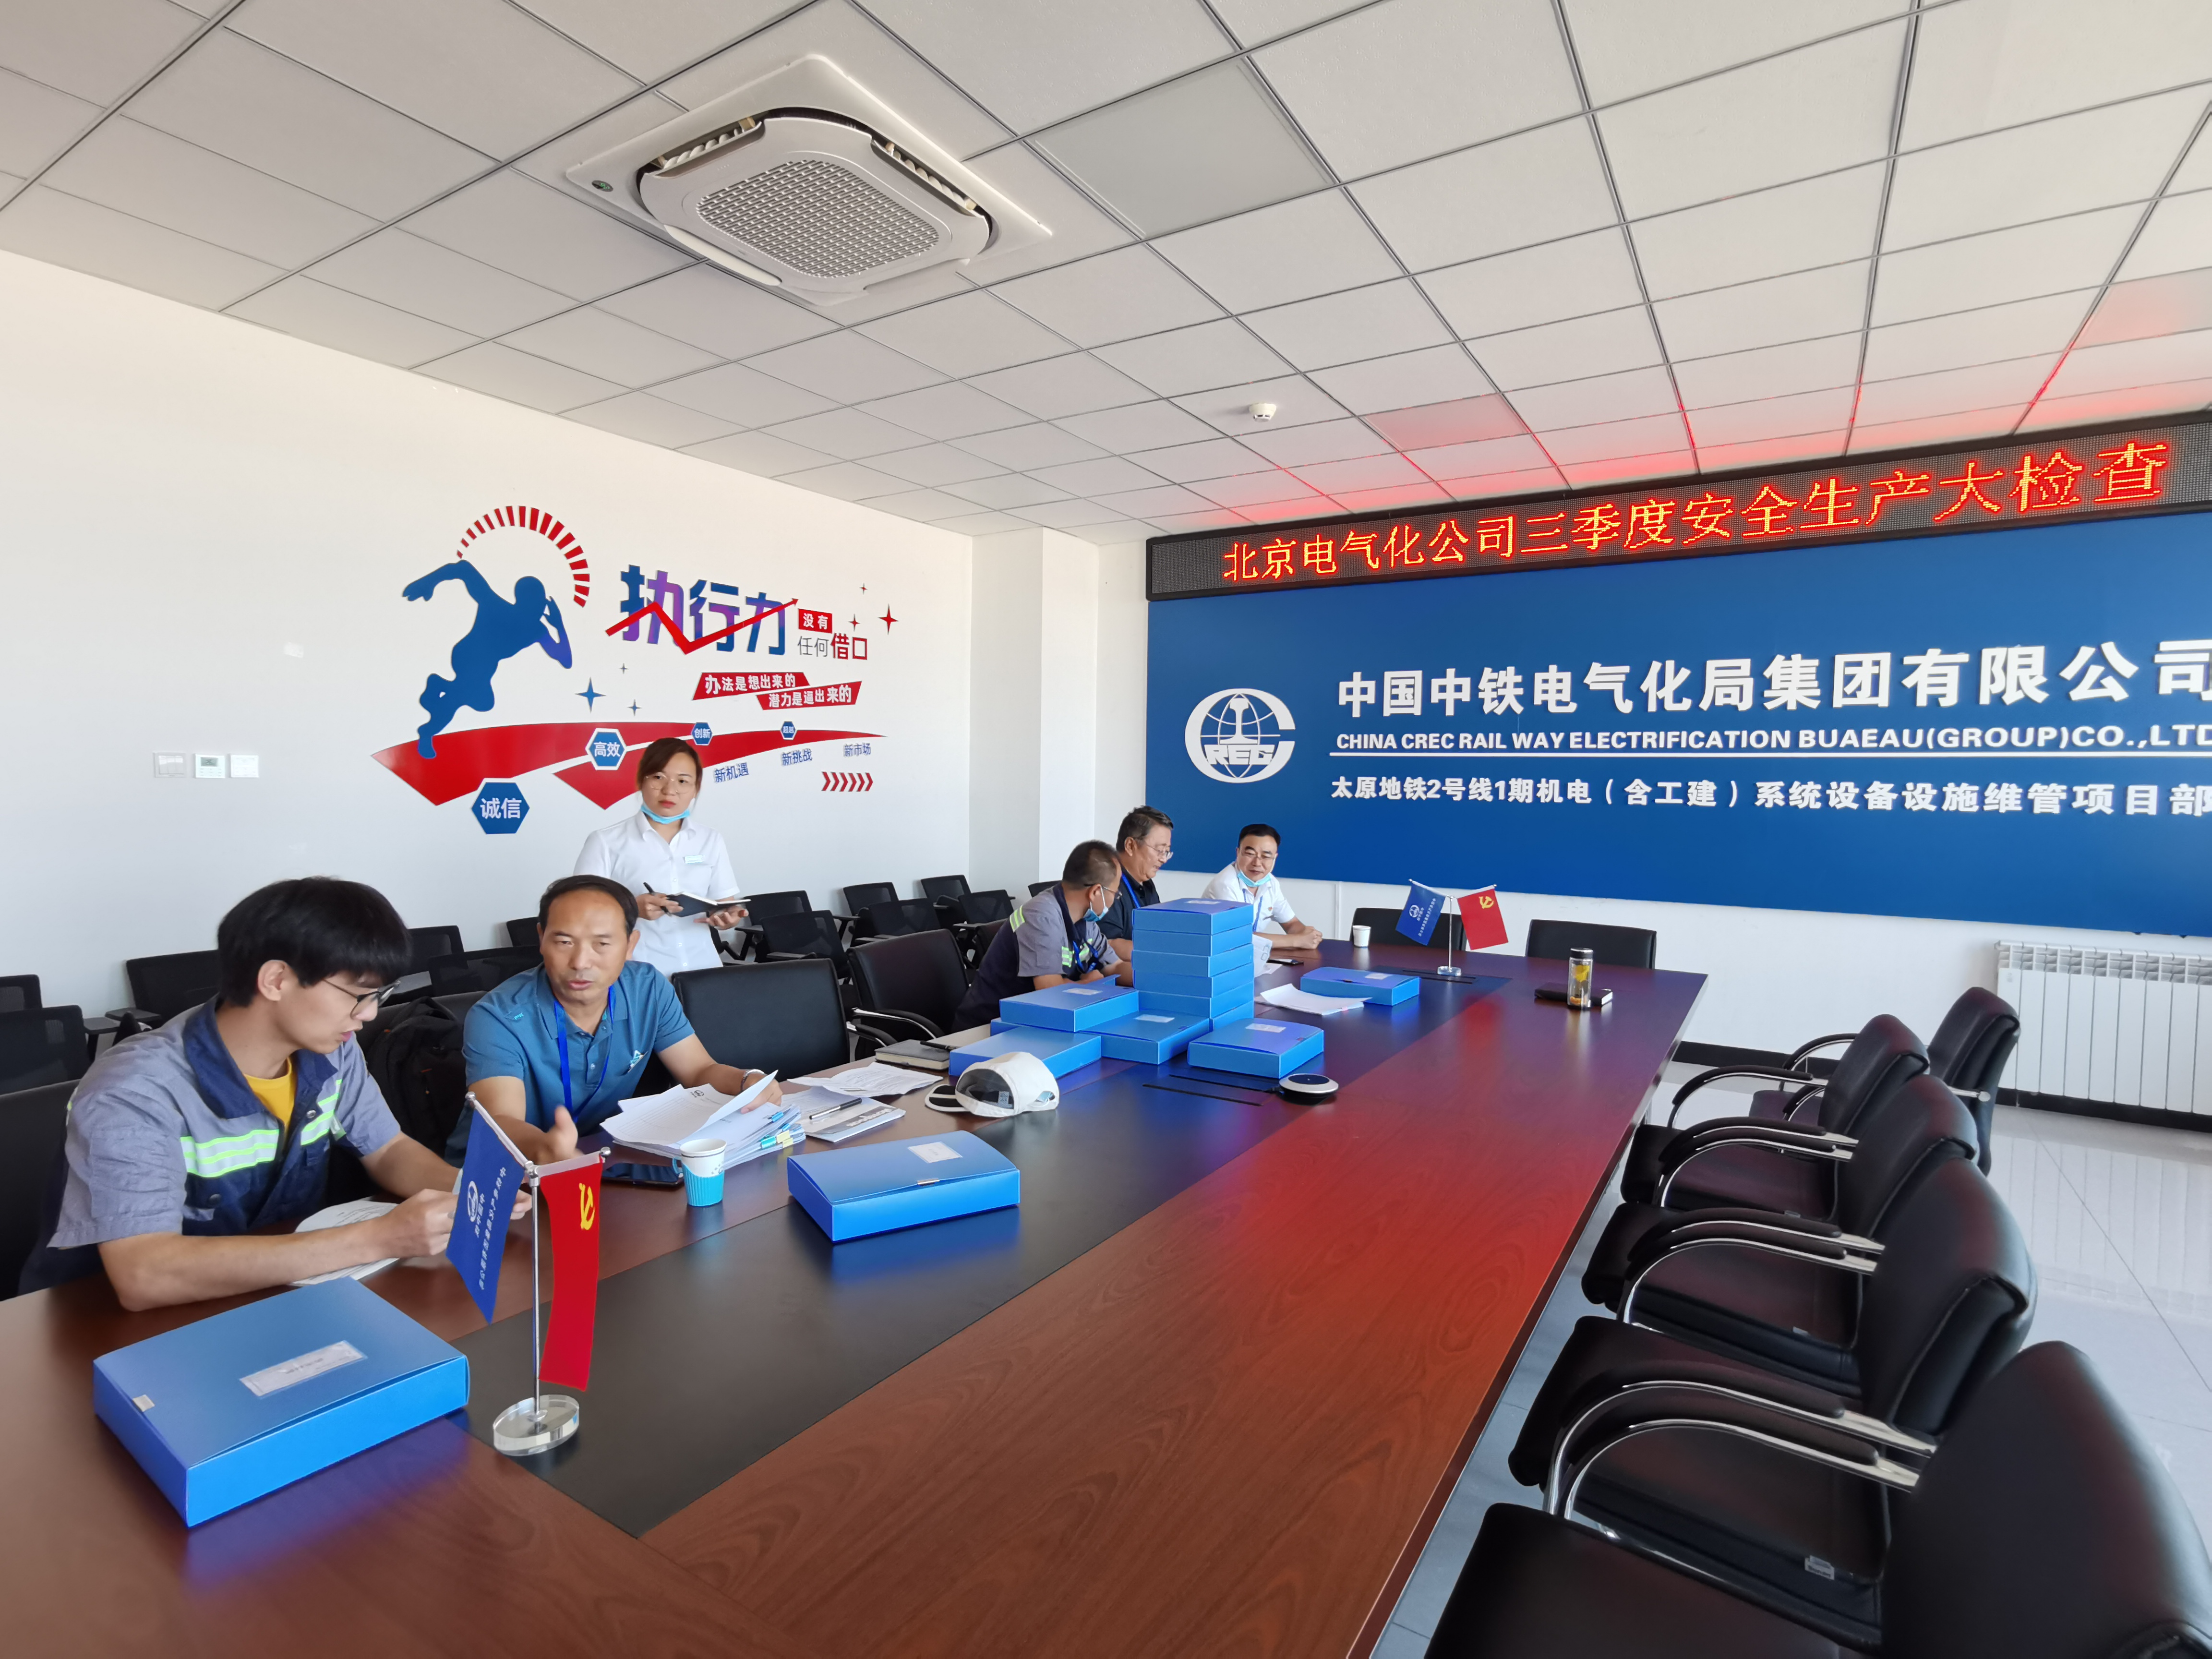 中铁电气化局北京电化公司对太原地铁2号维管项目进行安全大检查